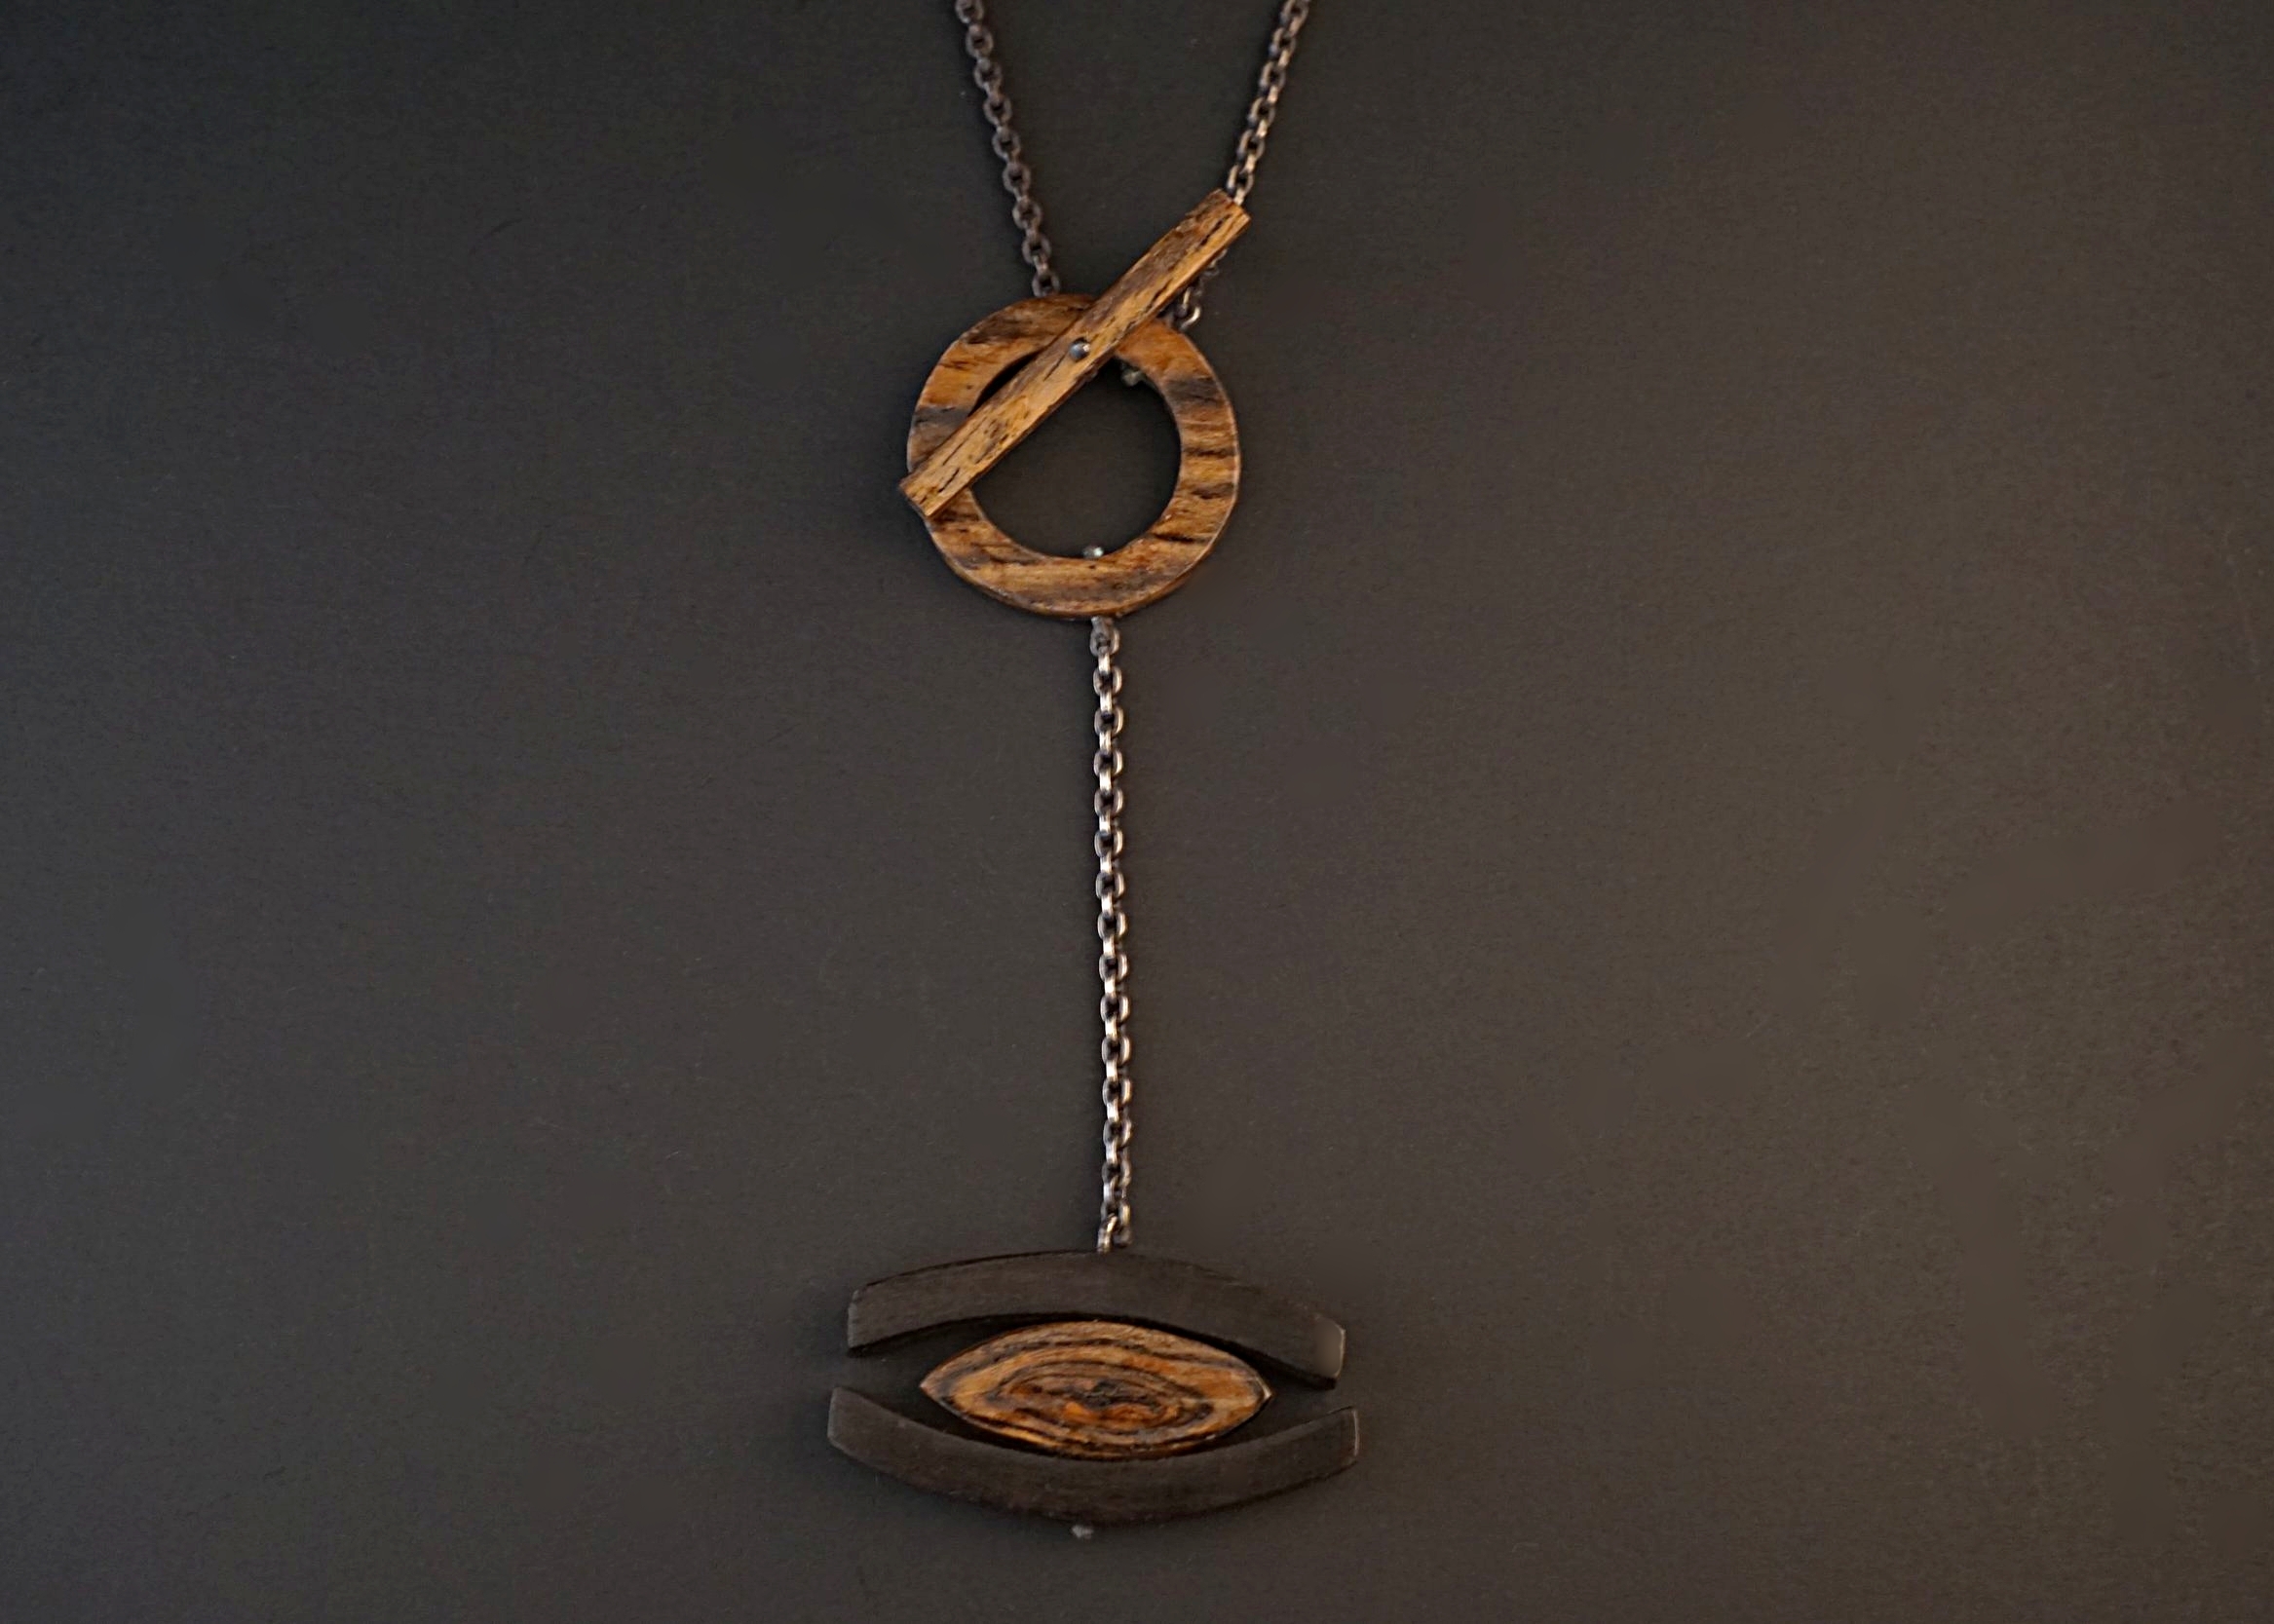 Bocote and ebony wood pendant